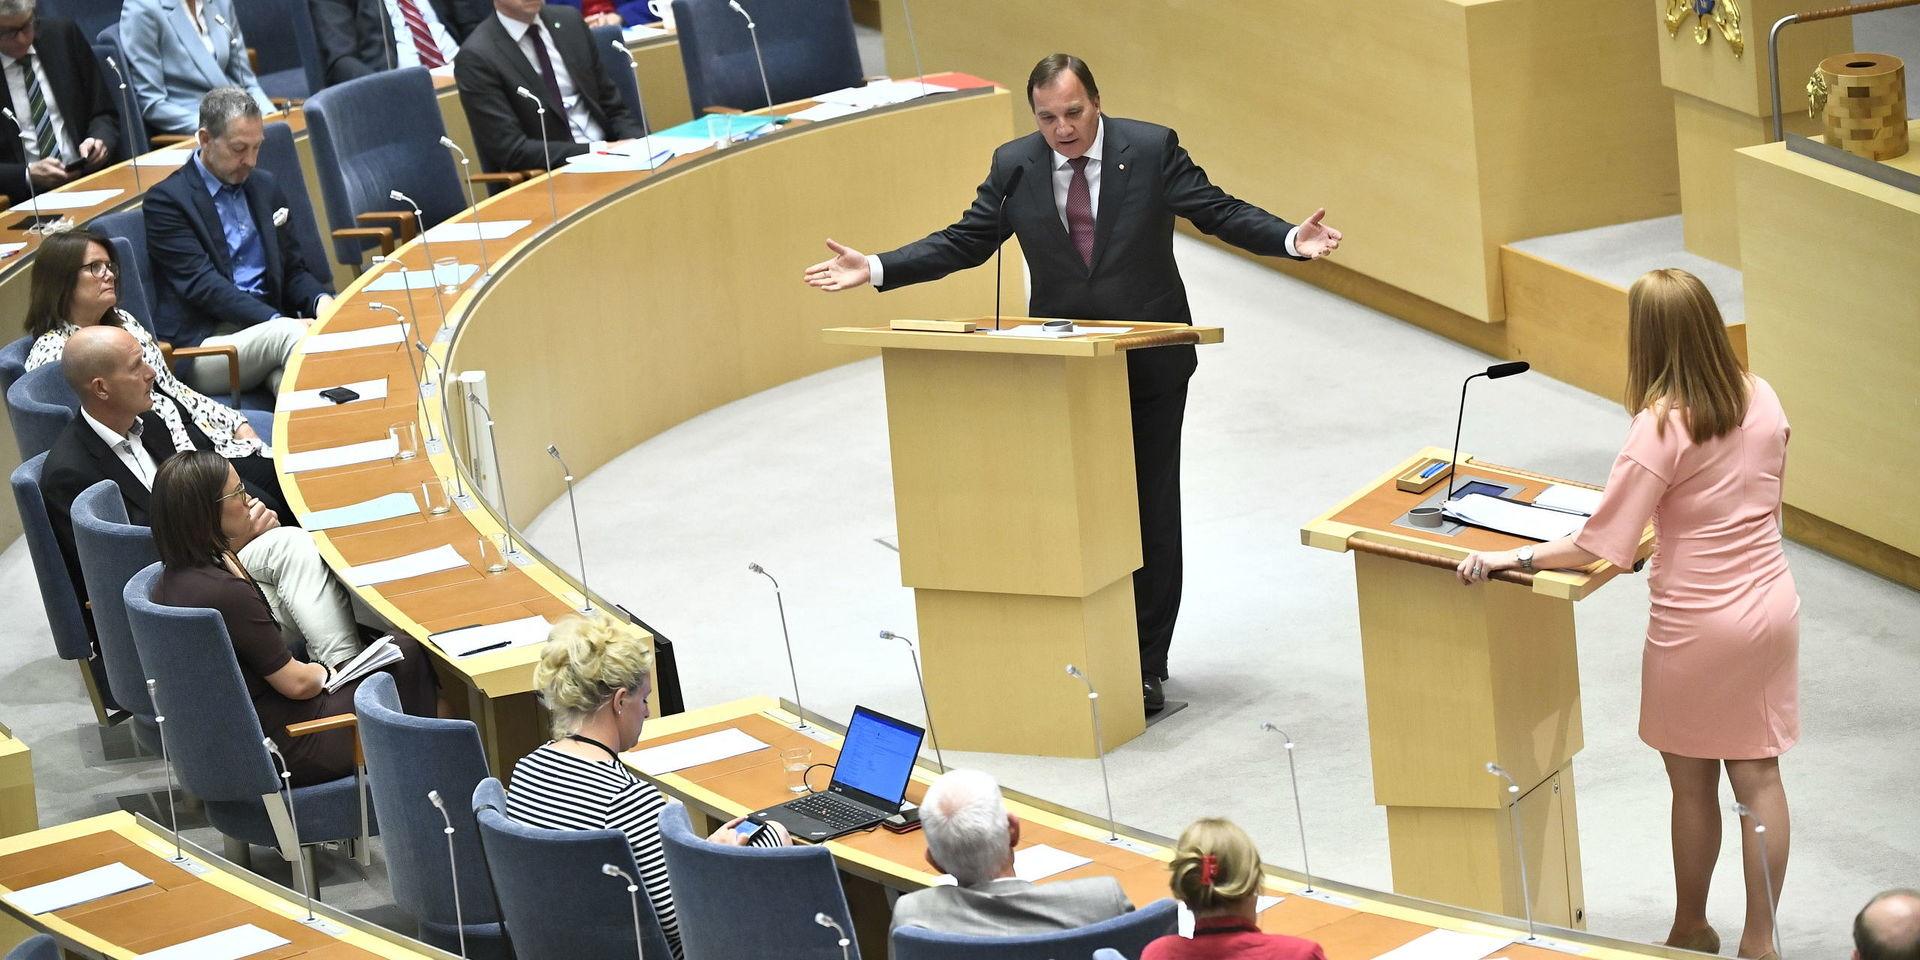 Bilden är tagen i riksdagen i juni i år under en partiledardebatt mellan Stefan Löfven (S) och Annie Lööf (C). Personerna på bilden har inget med insändaren att göra.